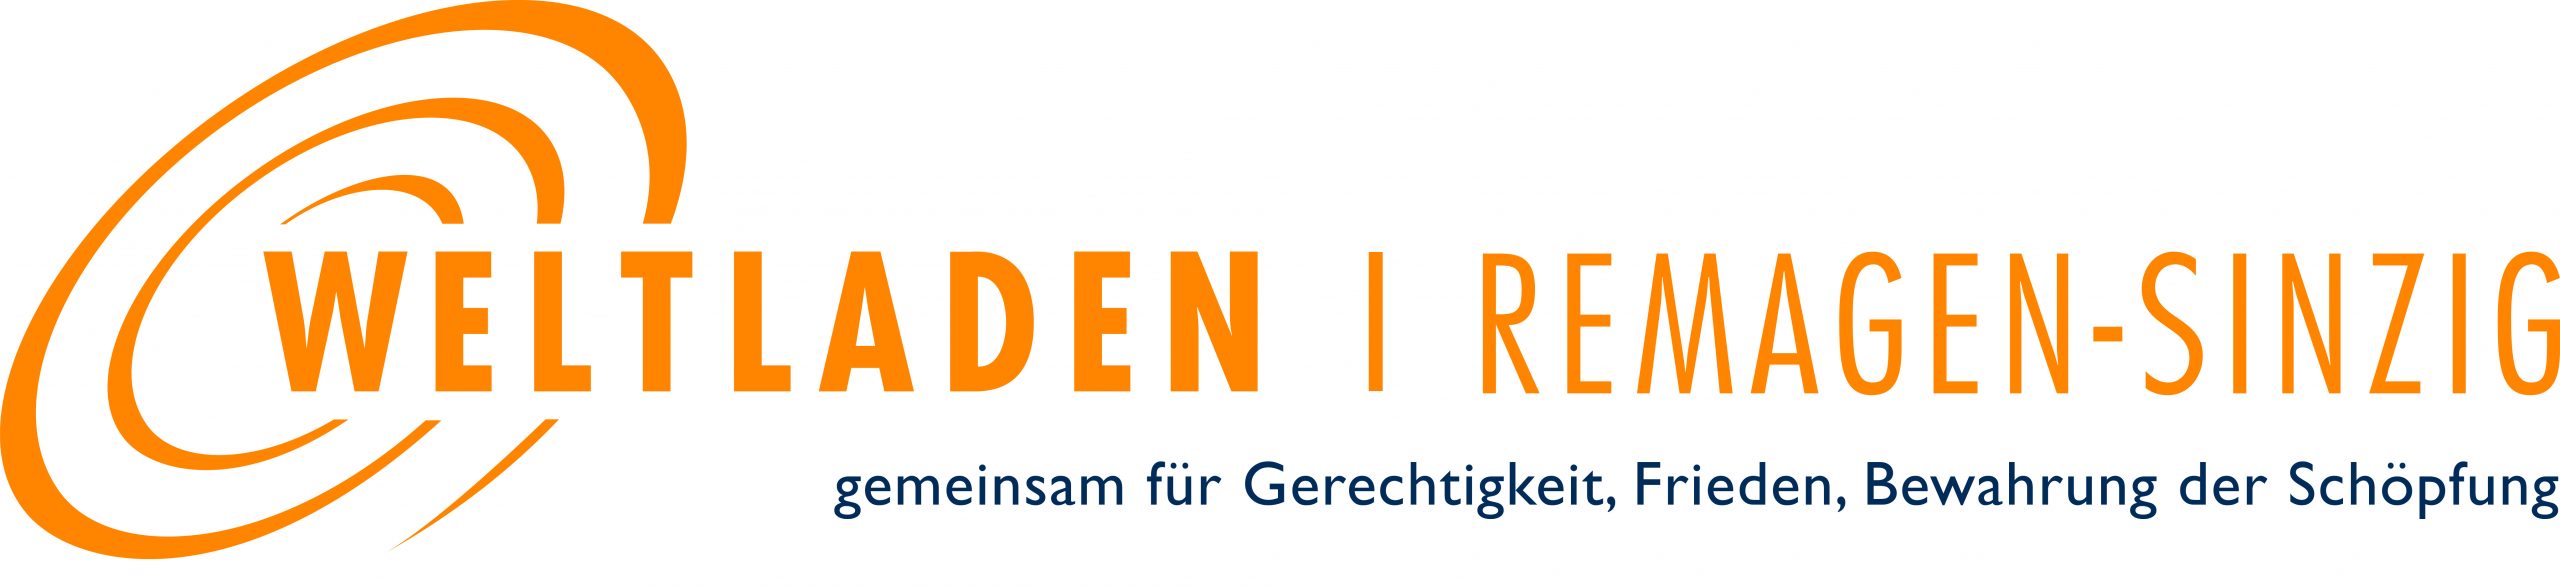 Weltladen Remagen-Sinzig Logo